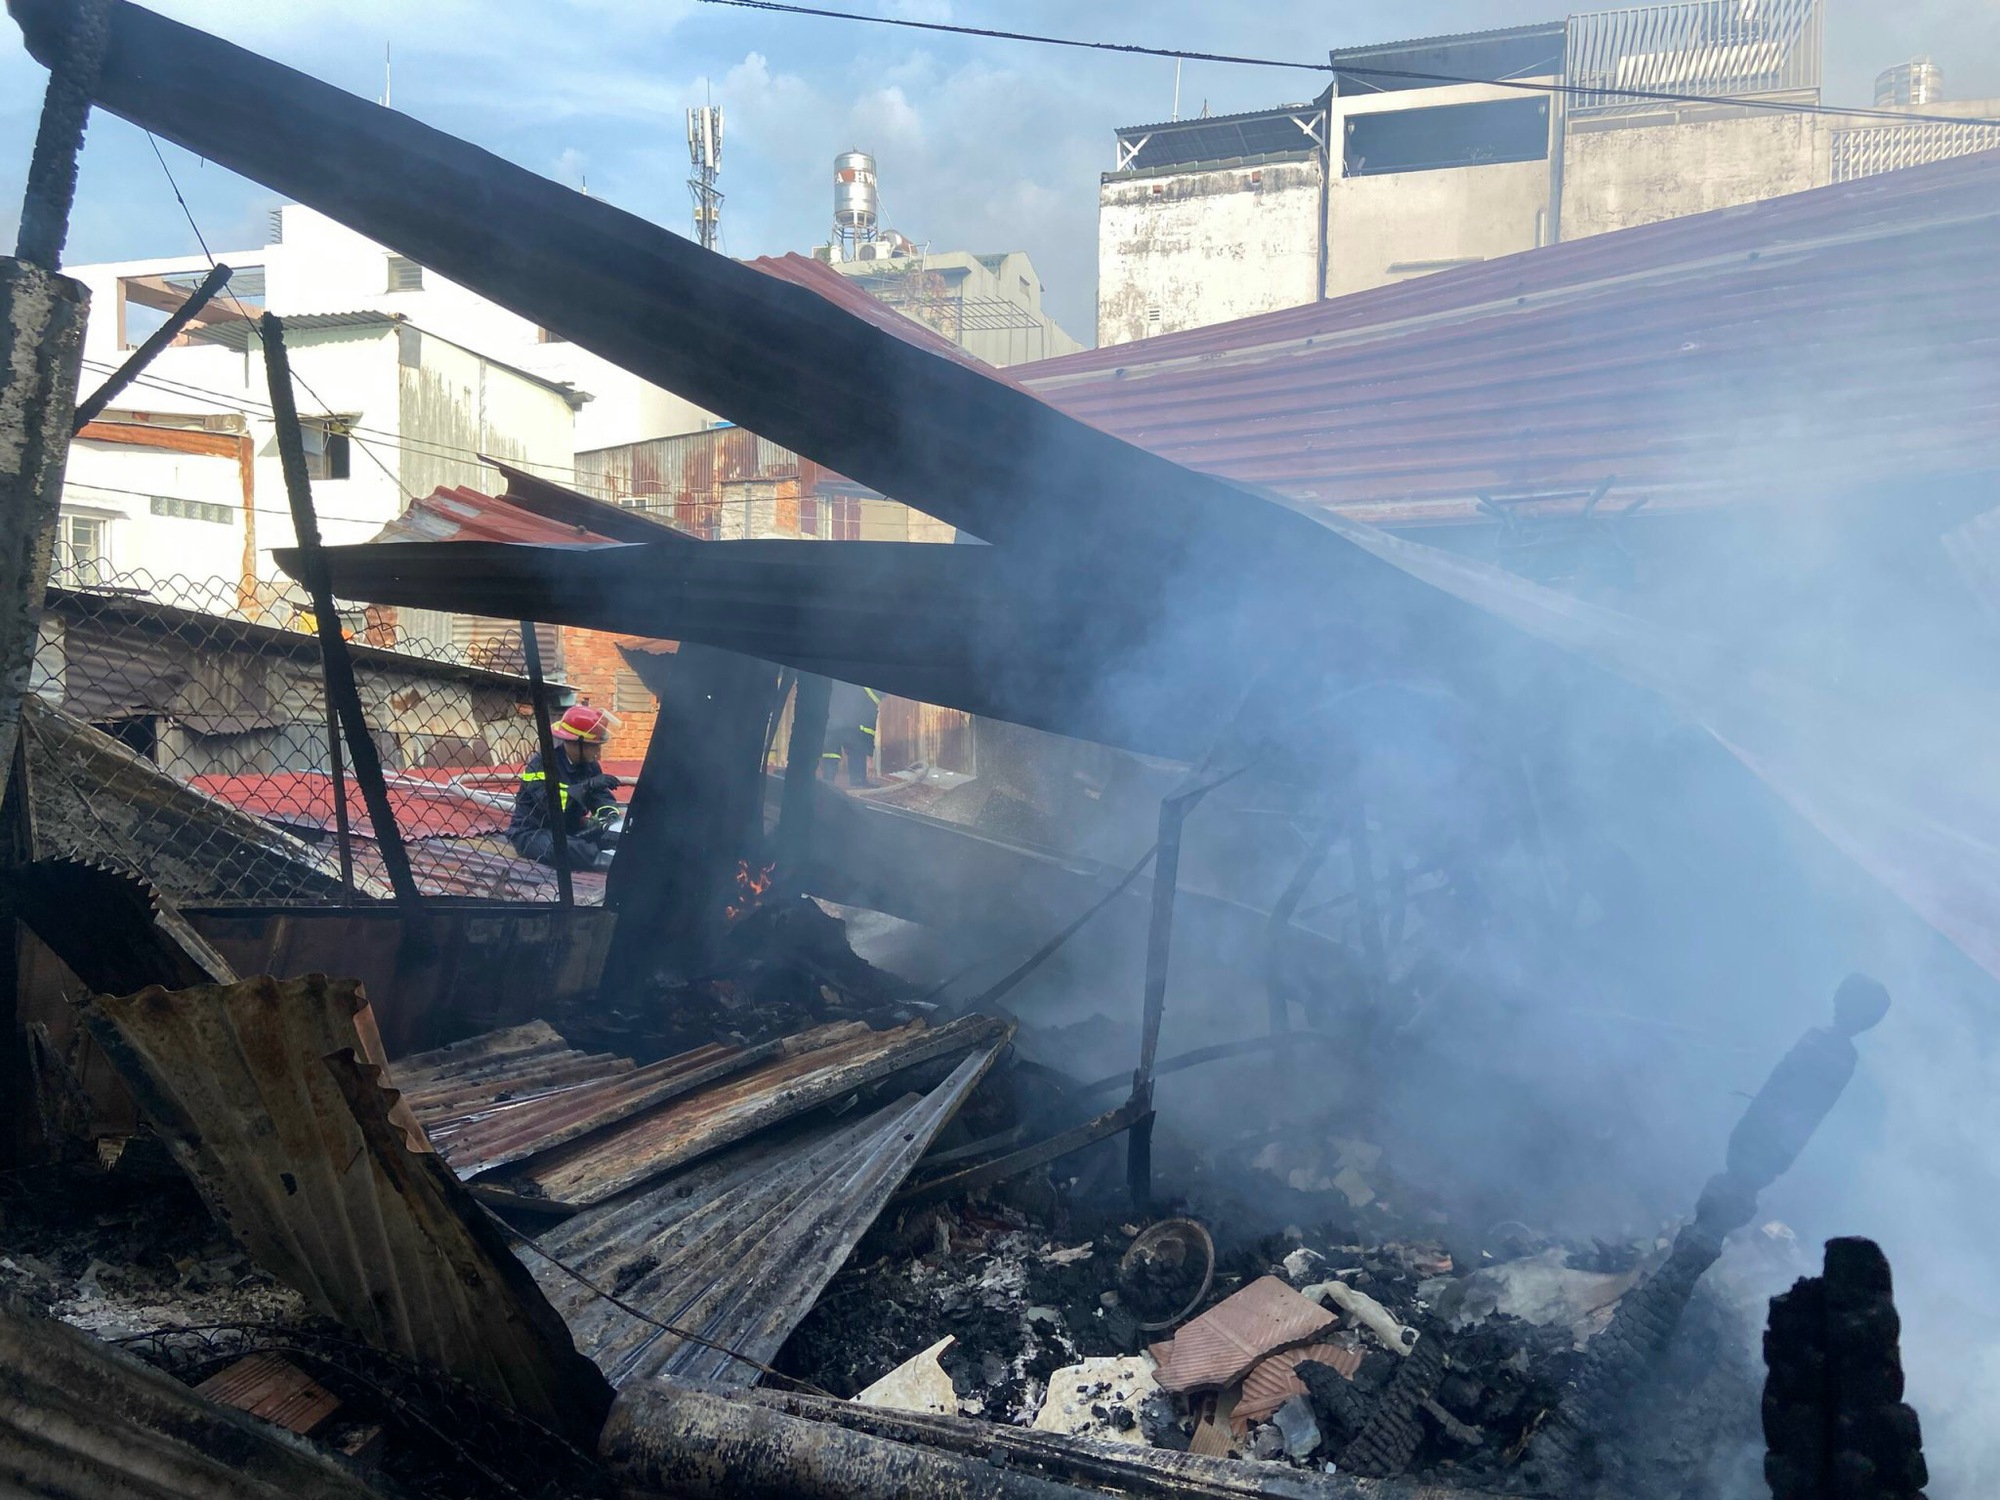 Nổ kèm cháy lớn tại một nhà ở quận Bình Thạnh, TP HCM - Ảnh 1.